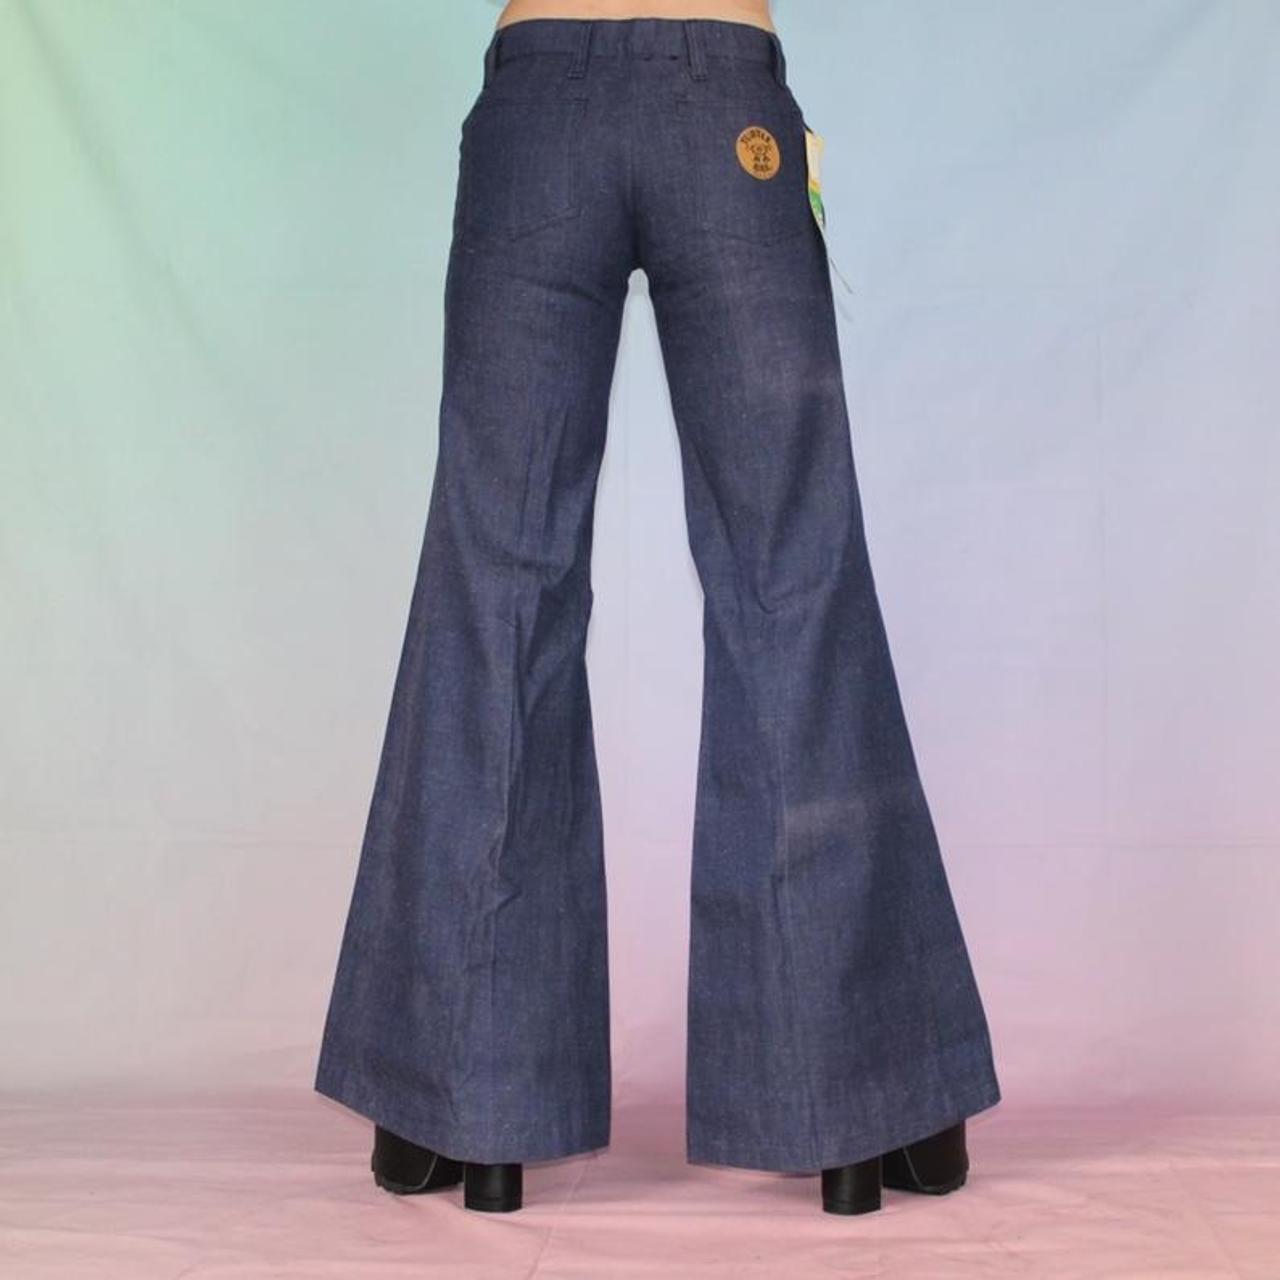 Vintage 70s jeans bell bottoms wide leg 🌈 Vintage... - Depop